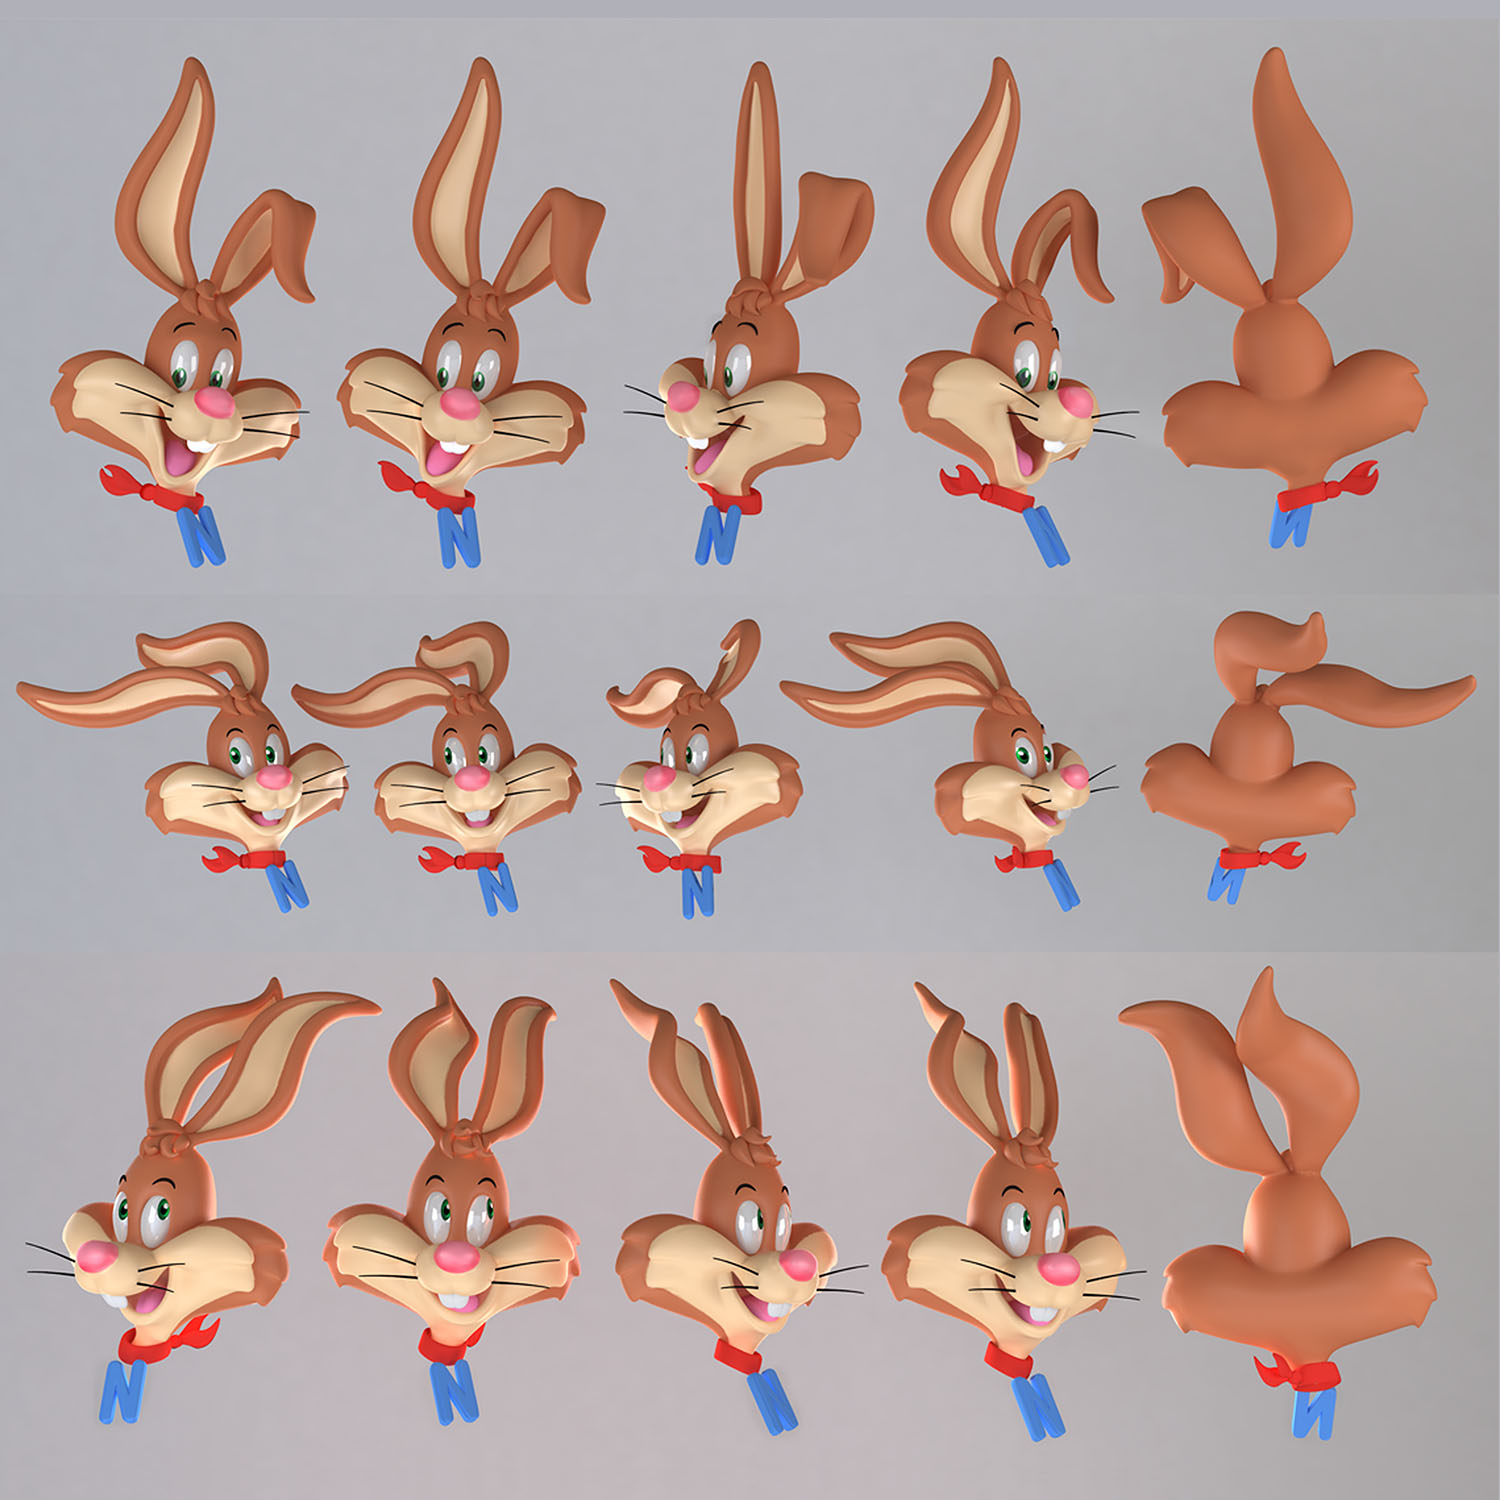 Nestle-Quik-Bunny-Bunny faces group_o.jpg